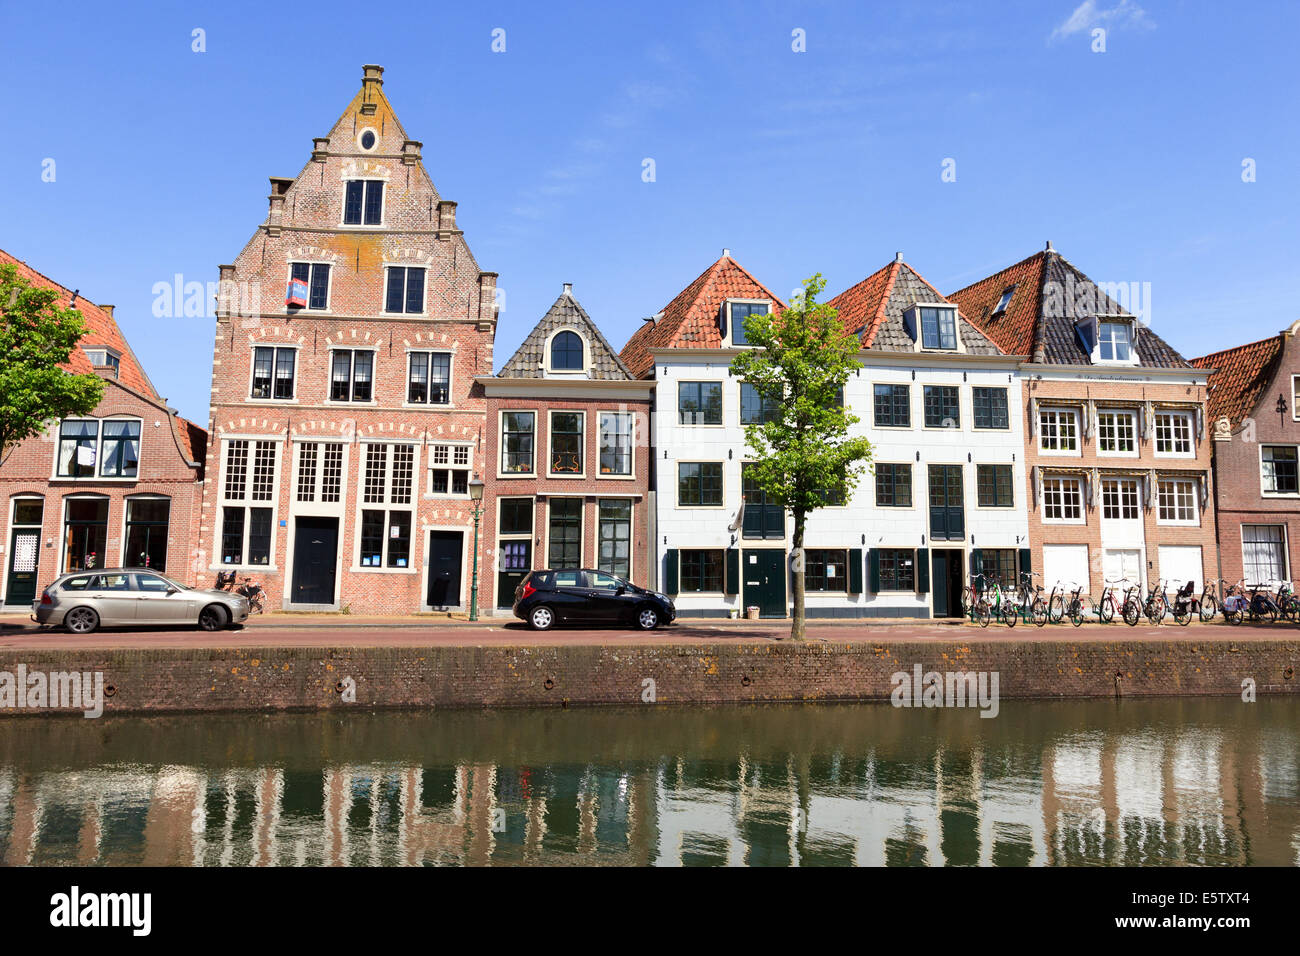 Vecchia casa sul porto olandese della città storica Hoorn. Foto Stock